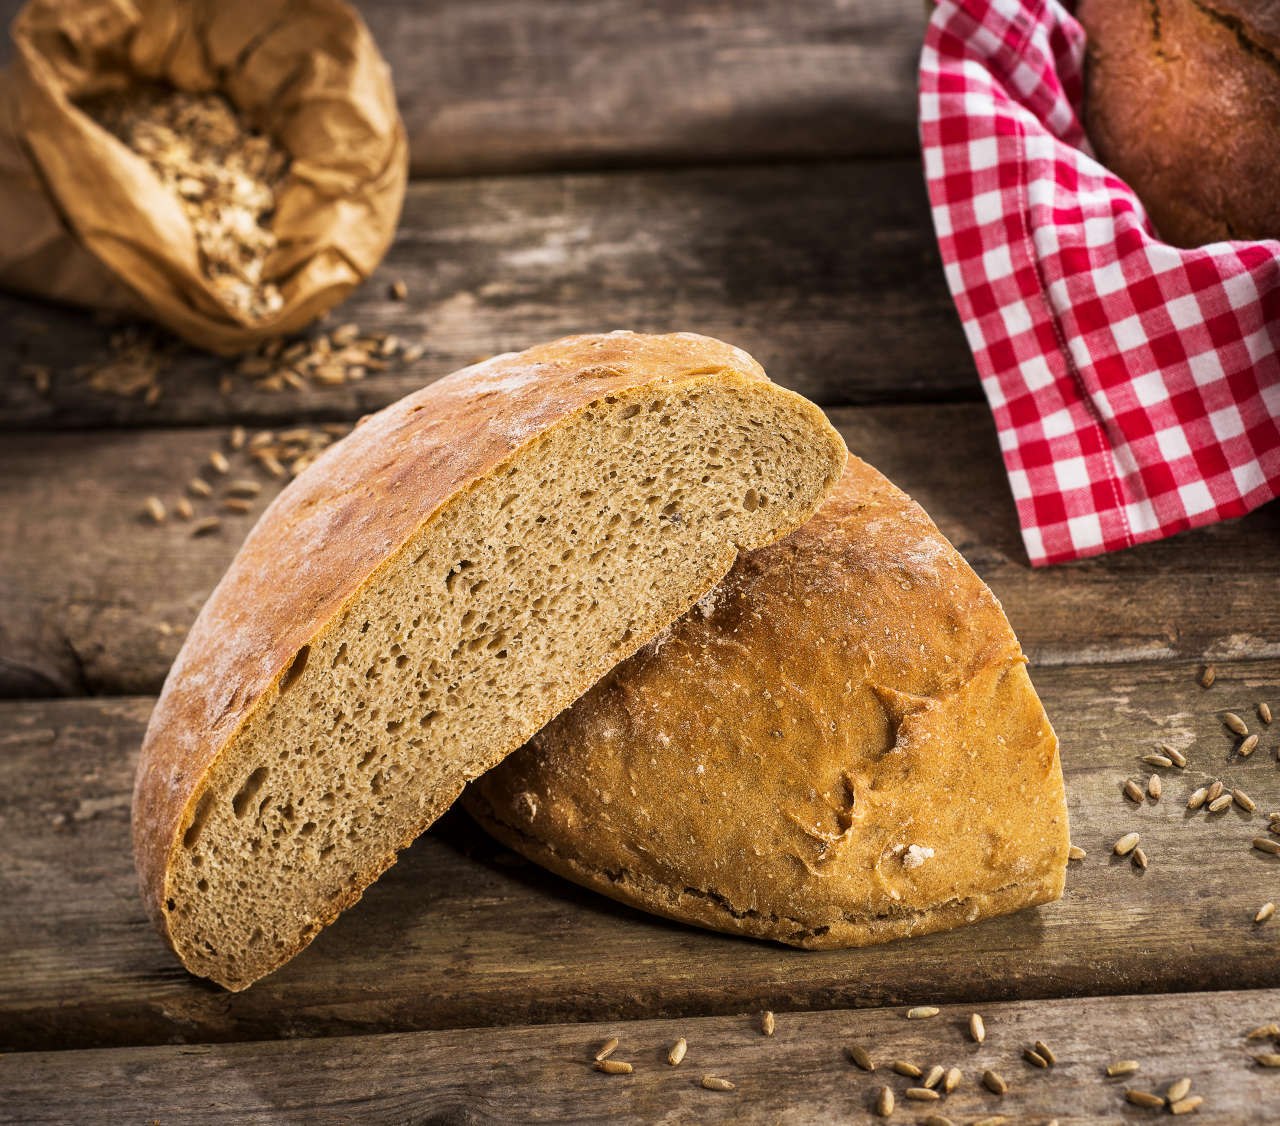 Подовый хлеб это какой. Хлеб пшеничный деревенский подовый. Хлеб деревенский Форнакс. Бамбергский Фладен хлеб. Хлеб деревенский ржано-пшеничный.